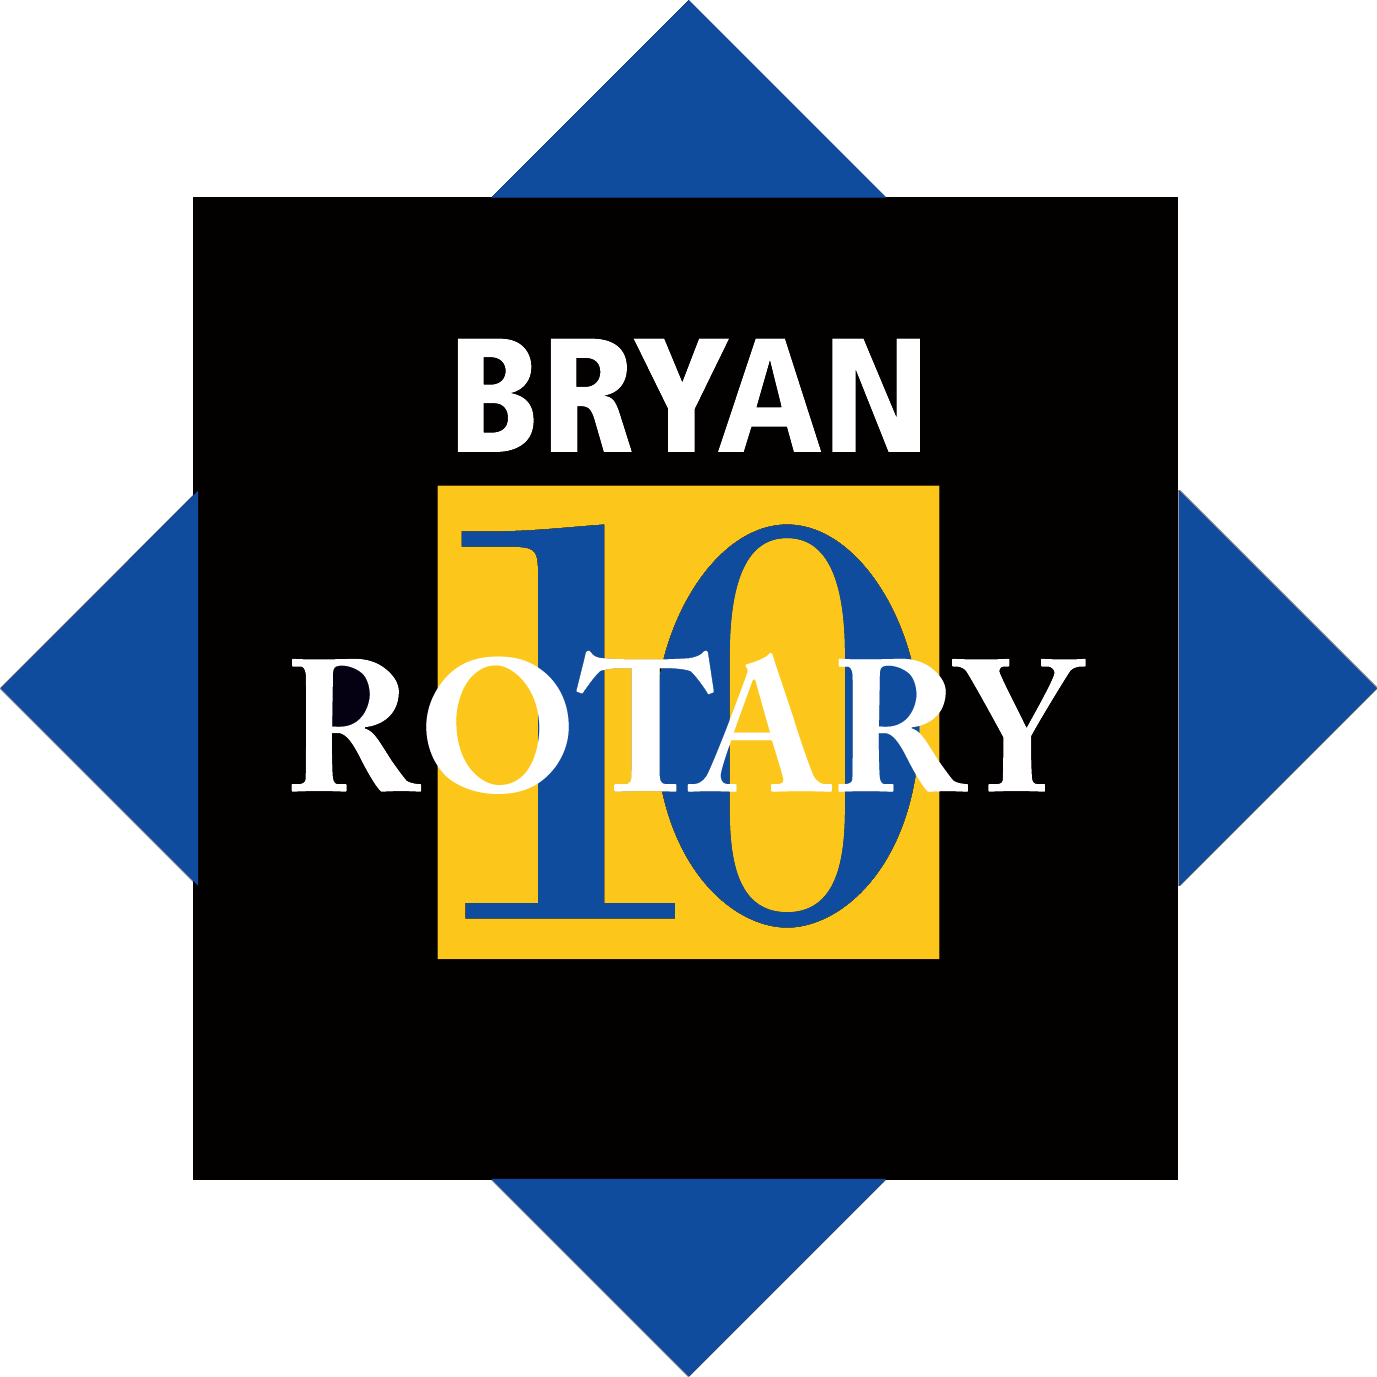 Bryan Rotary